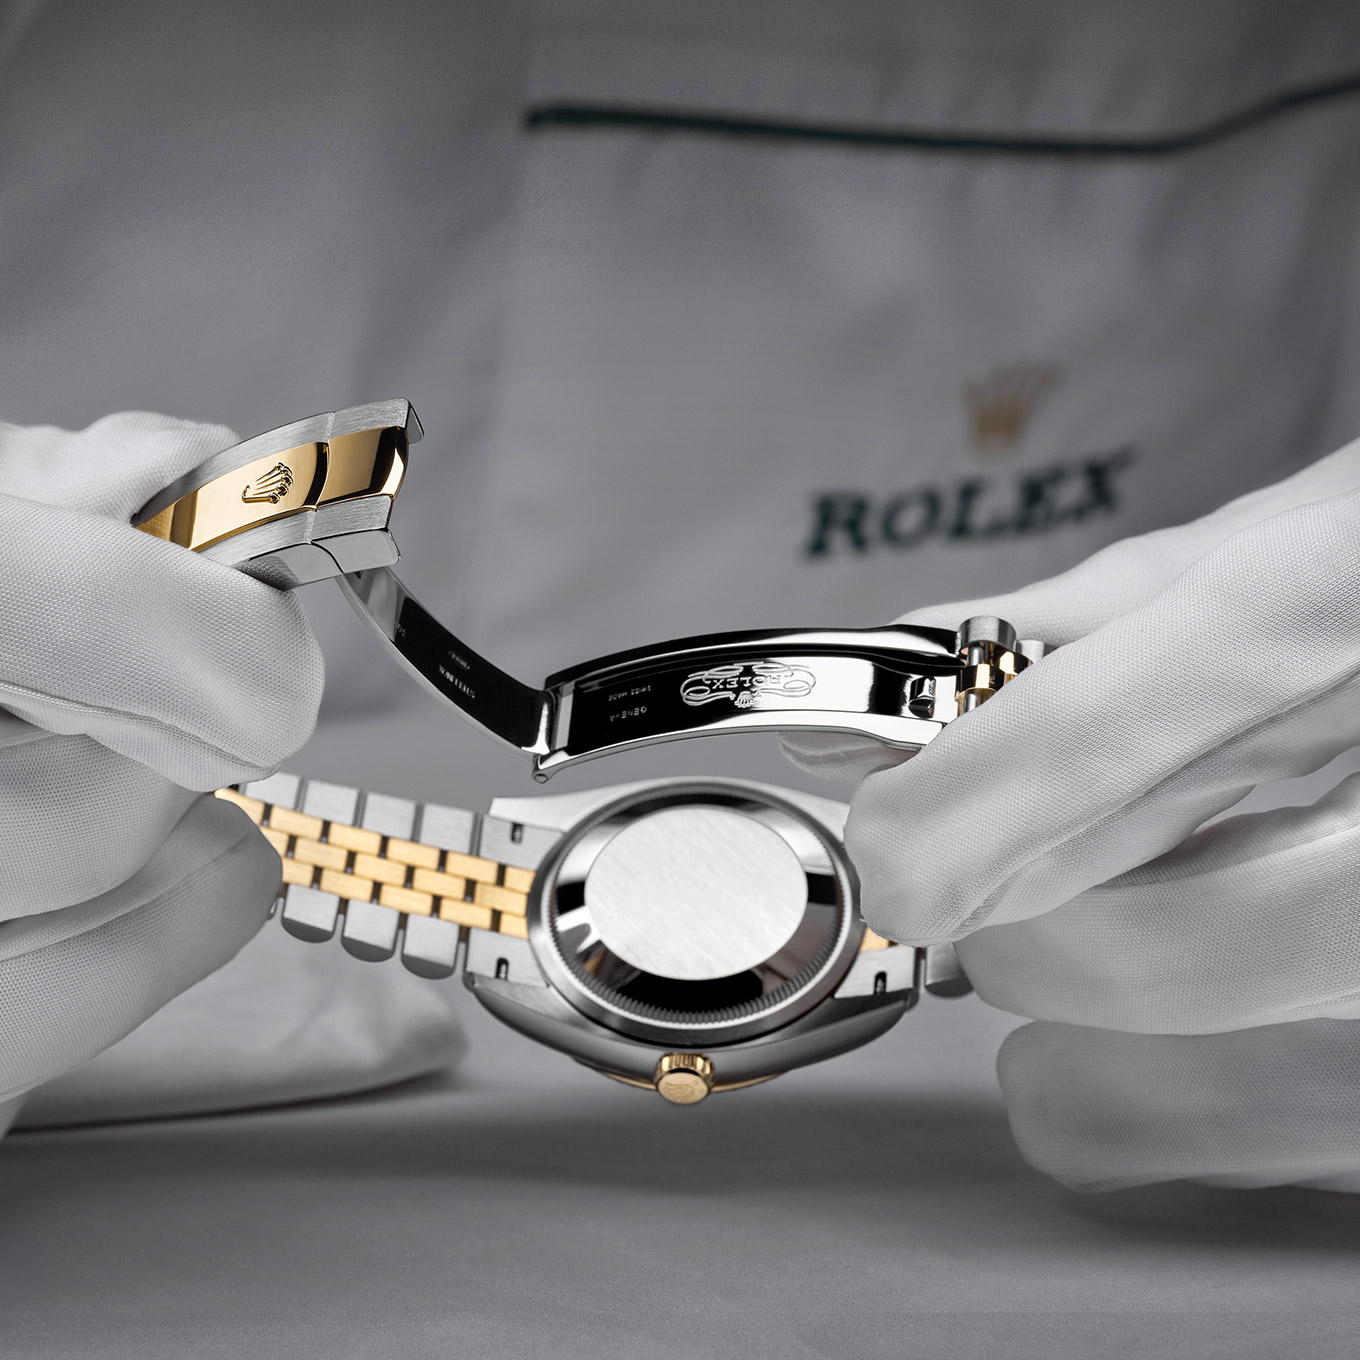 Das Rolex Wartungsverfahren